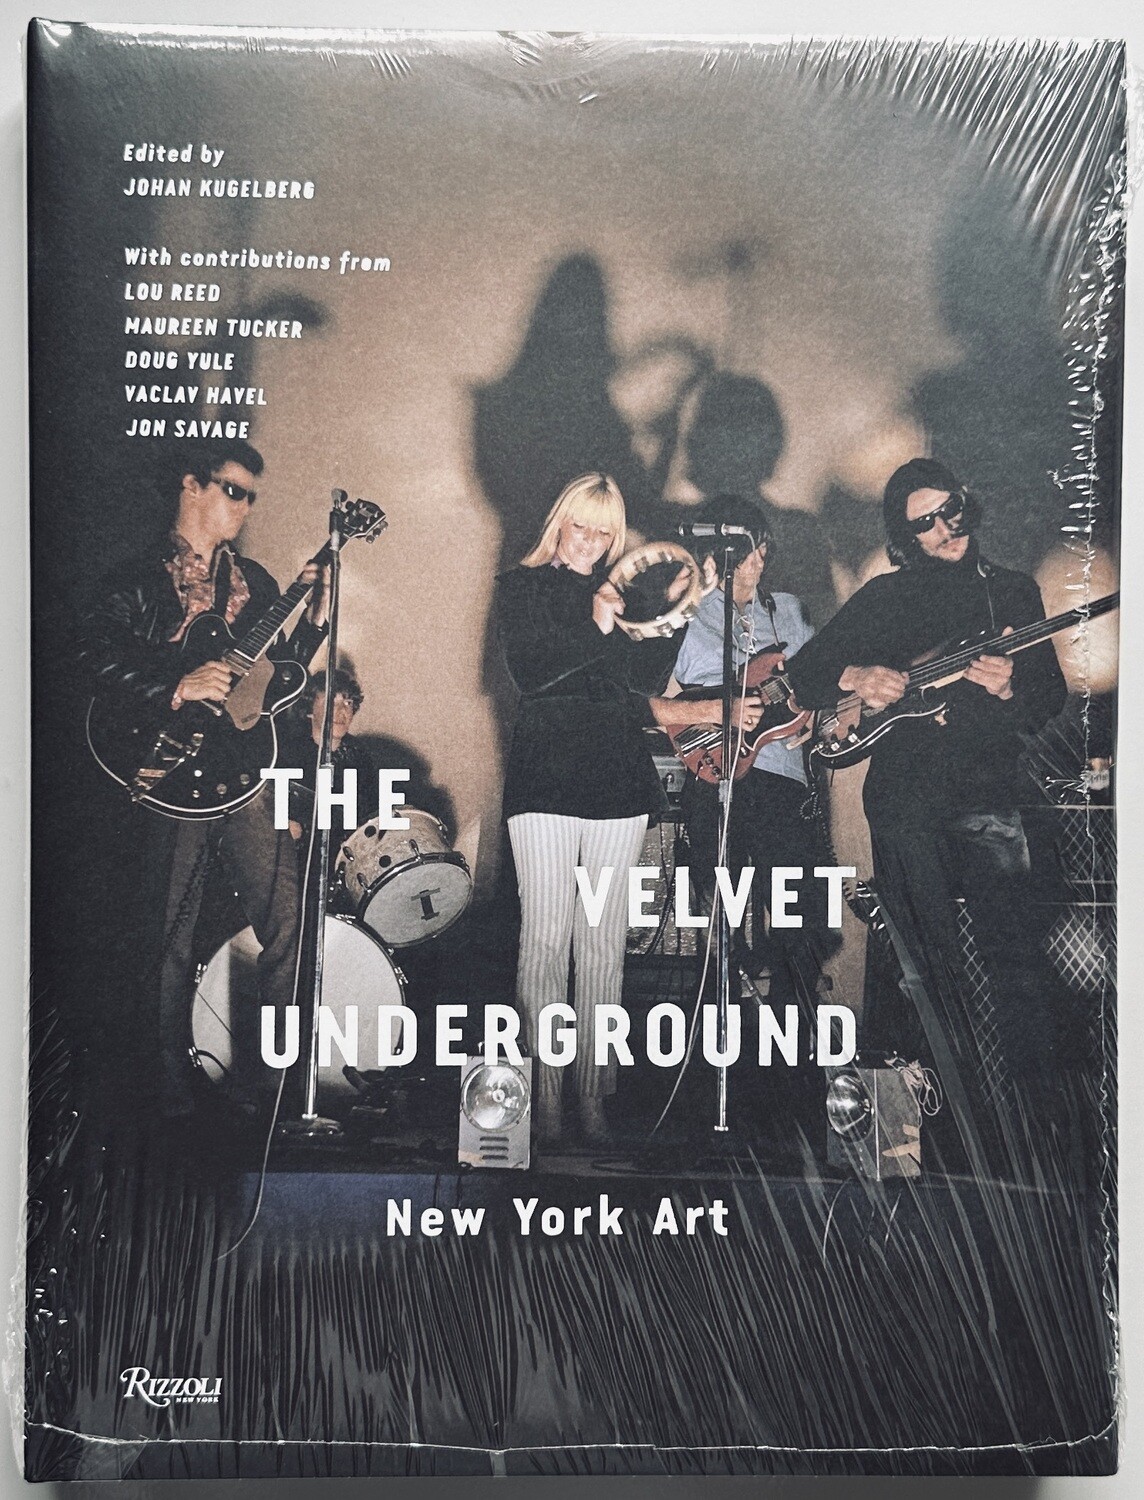 The Velvet Underground New York Art